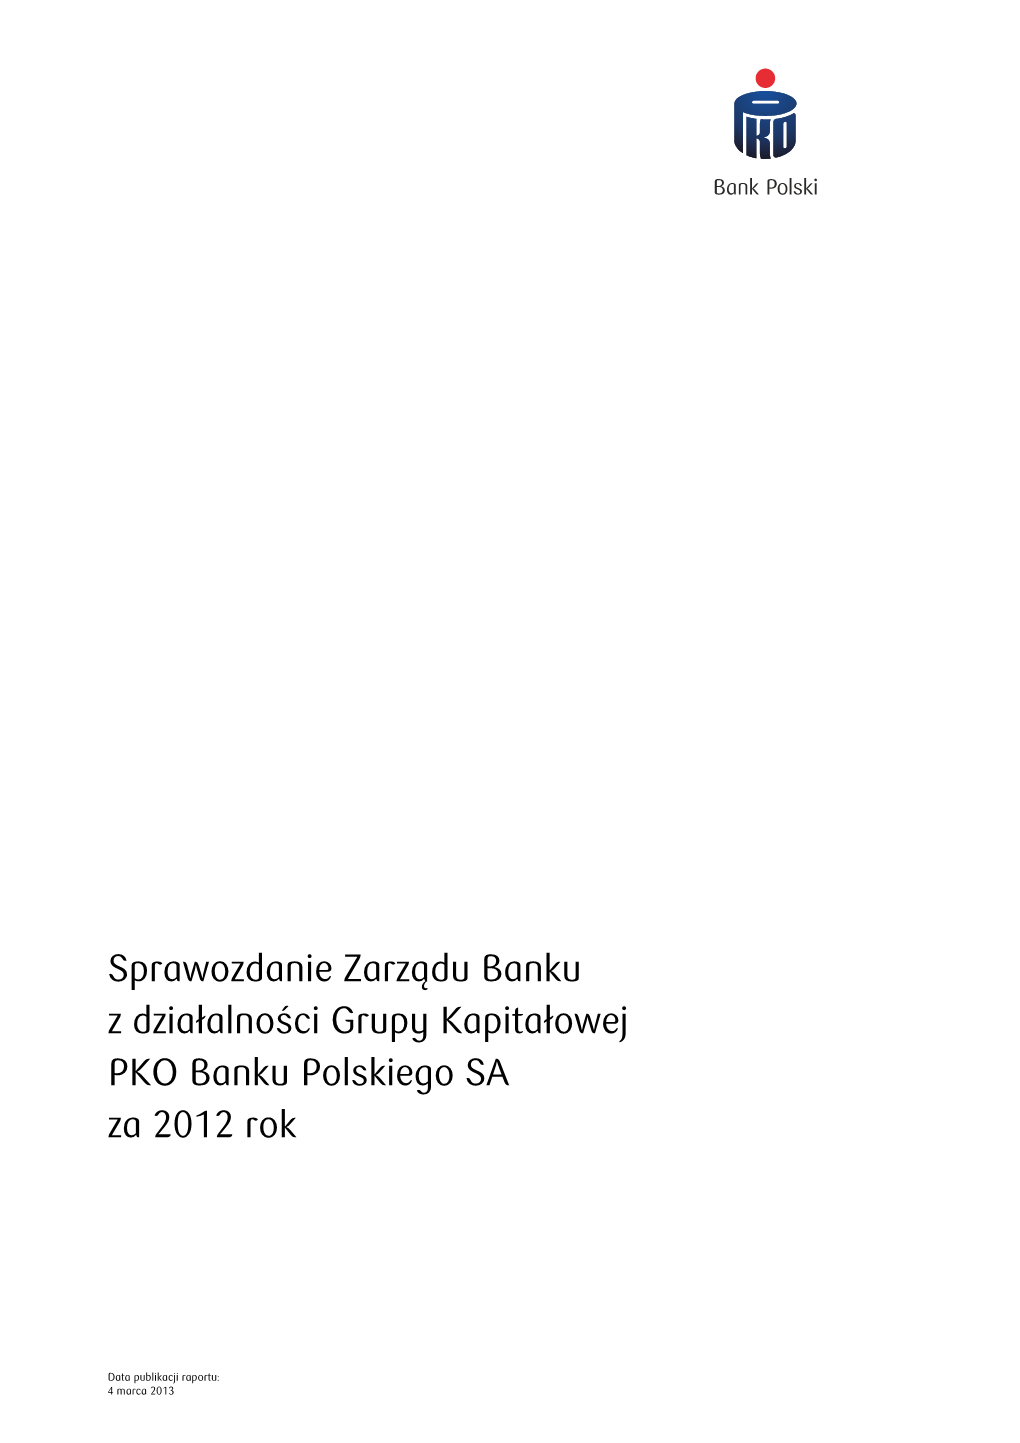 Sprawozdanie Zarządu Banku Z Działalności Grupy Kapitałowej PKO Banku Polskiego SA Za 2012 Rok